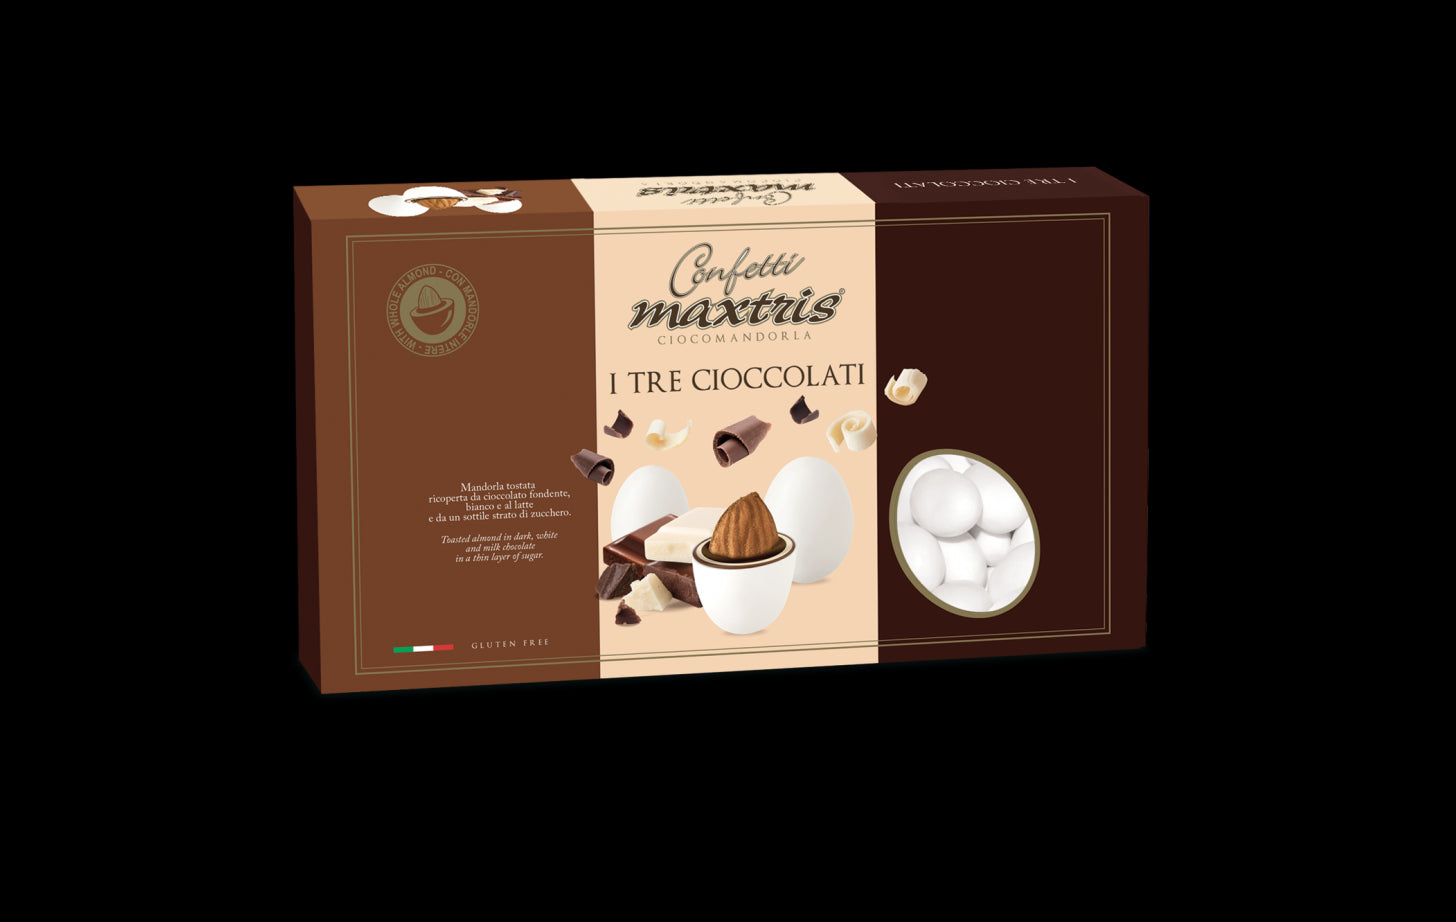 immagine-1-maxtris-confetti-ciocomandorla-i-tre-cioccolati-1-kg-ean-8022470210637